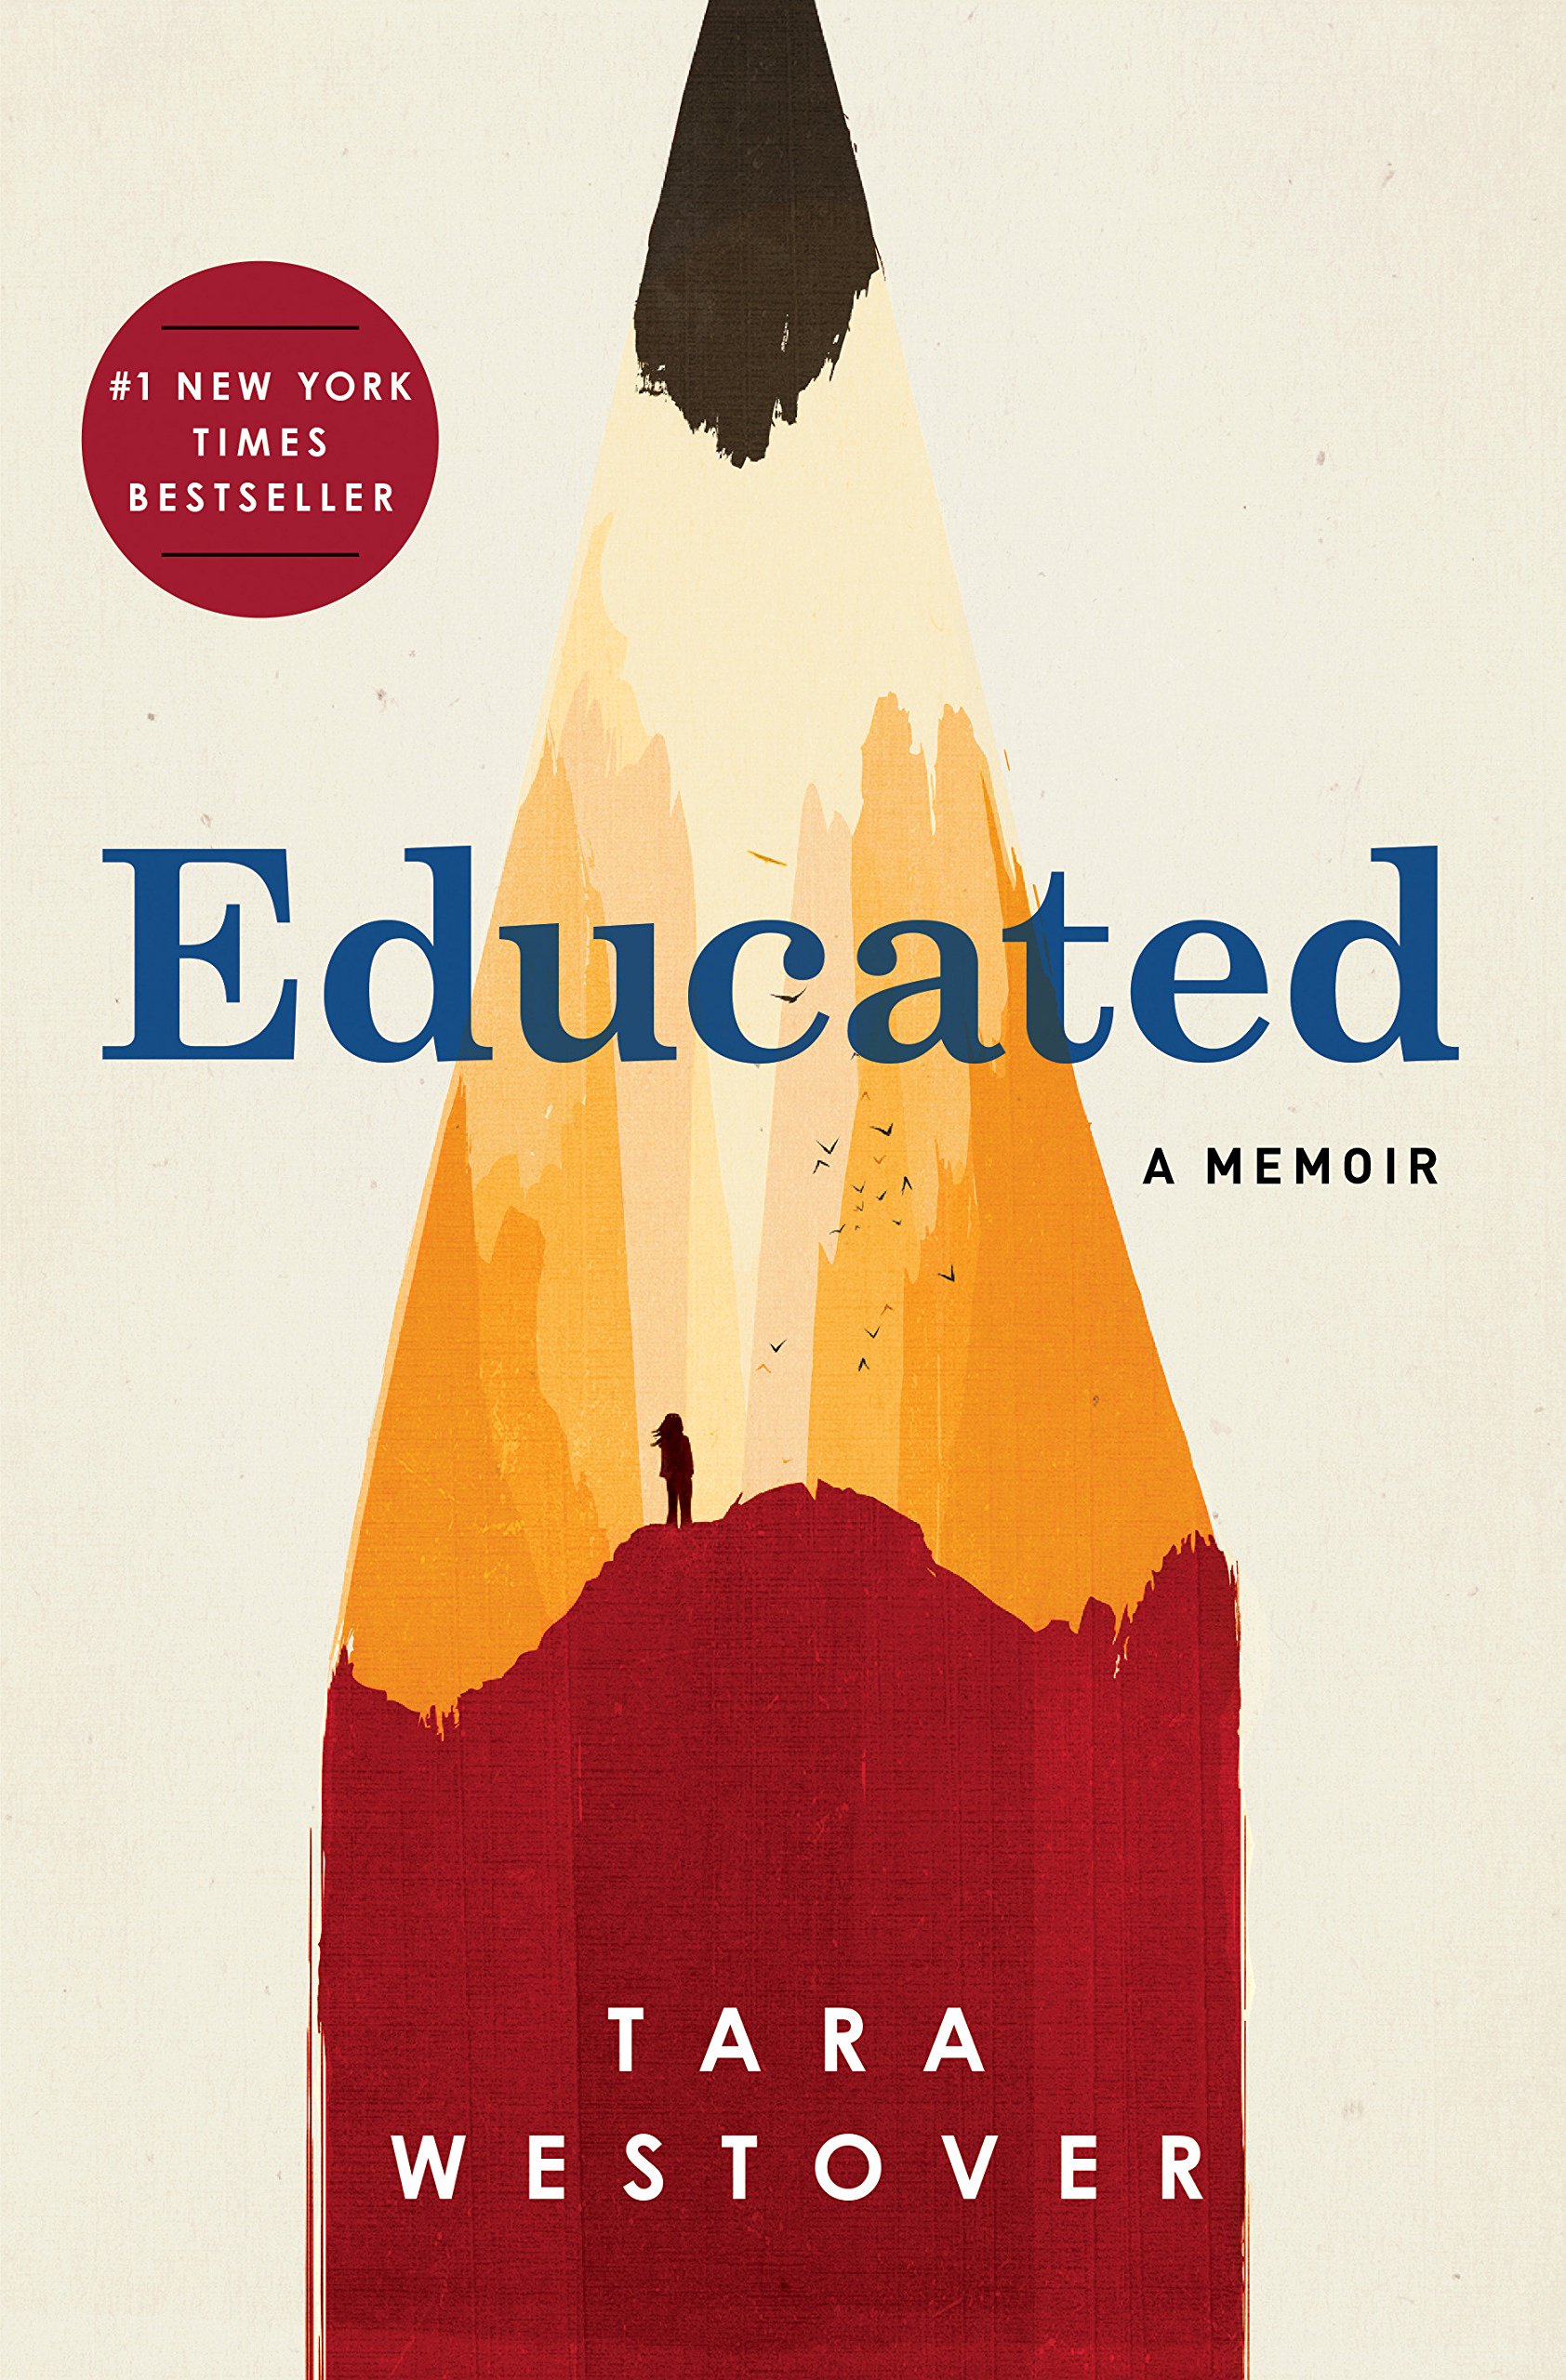 Educated, A Memoir by Tara Westover